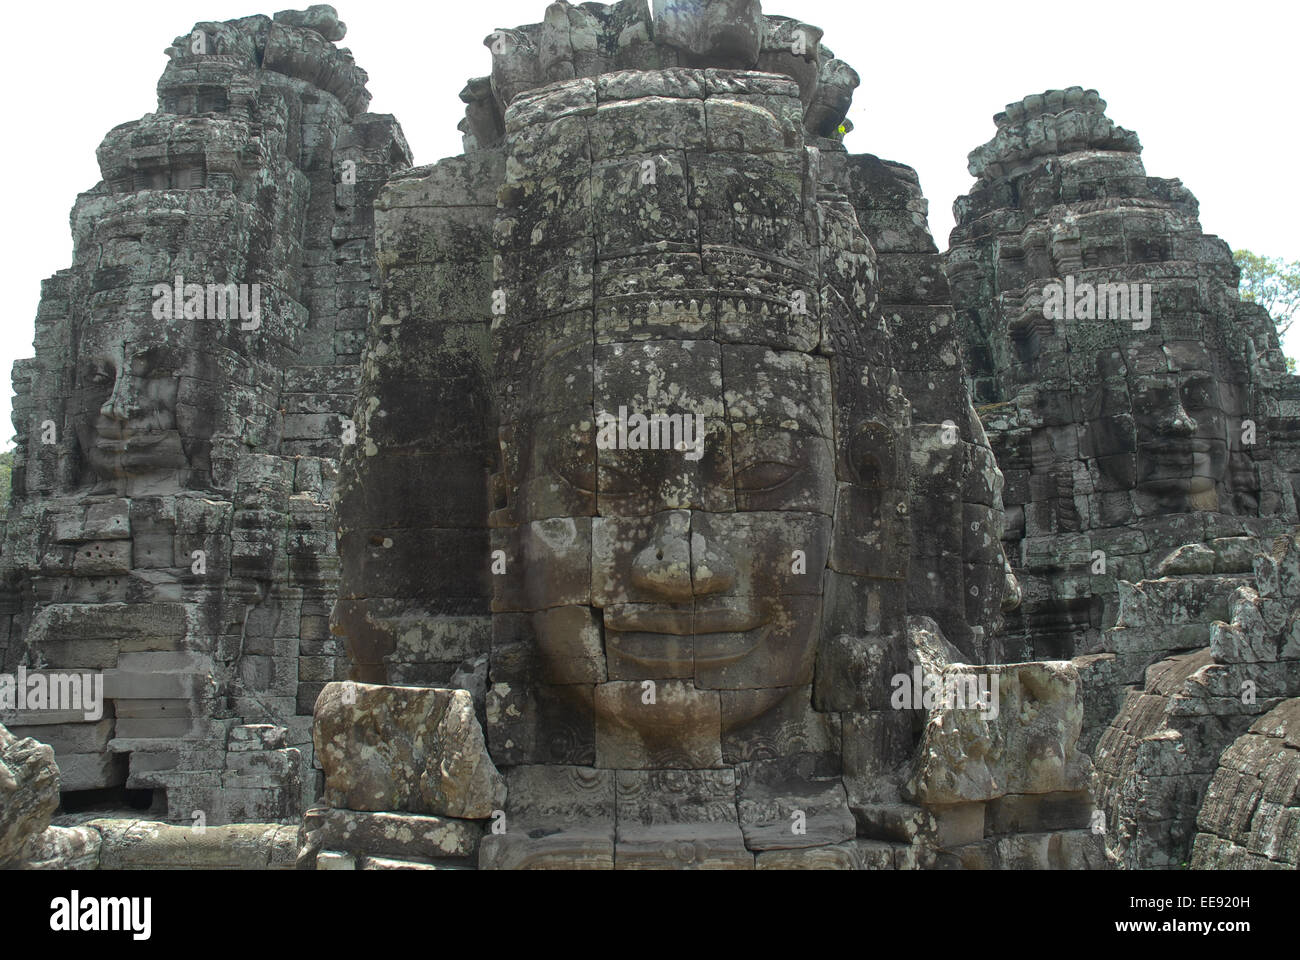 ruins of angkor thom at angkor wat cambodia Stock Photo